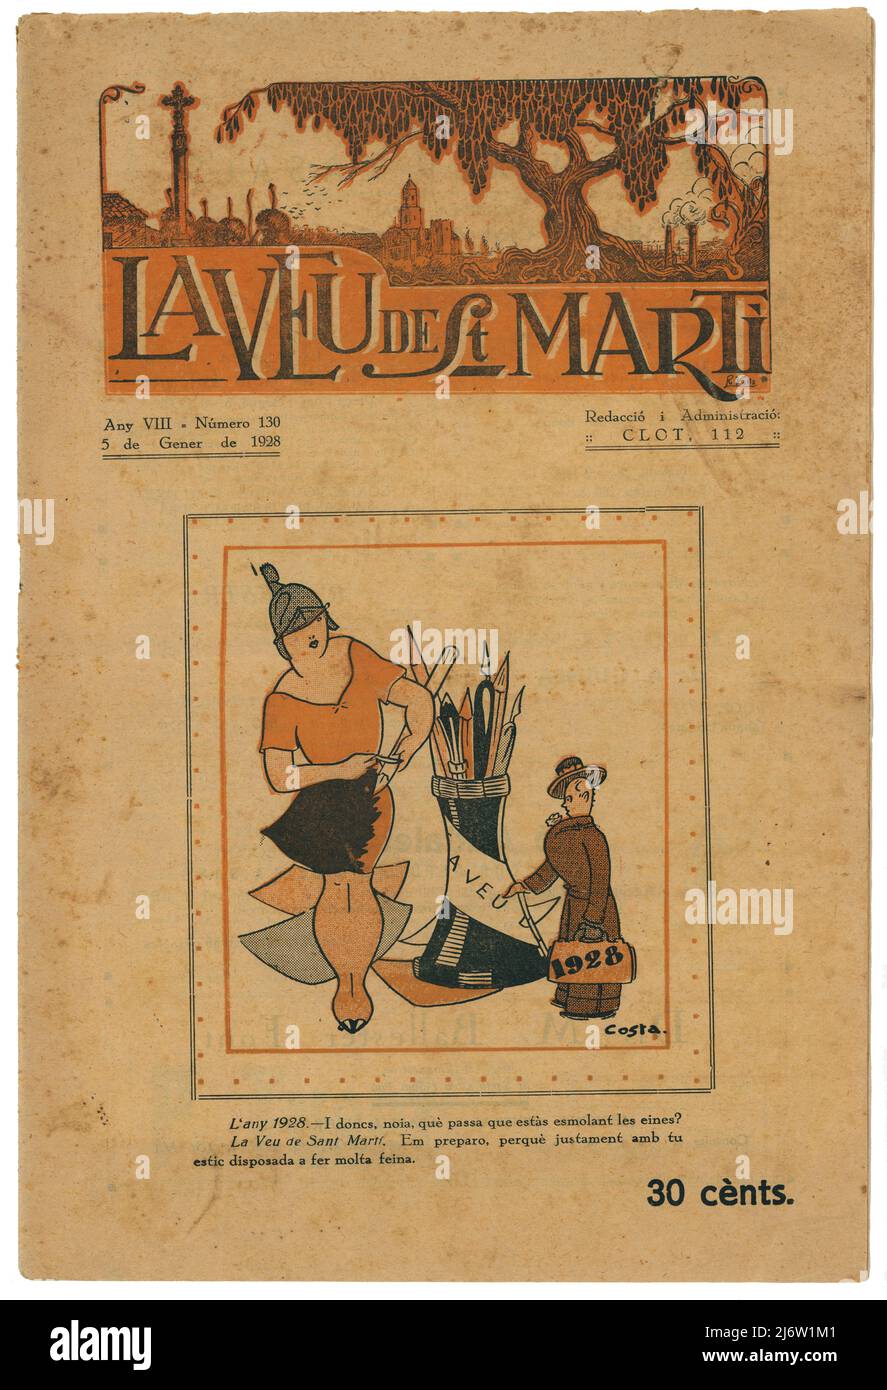 Portada de la revista La Veu de Sant Martí, editada en Barcelona, Clot, enero de 1928. Stock Photo